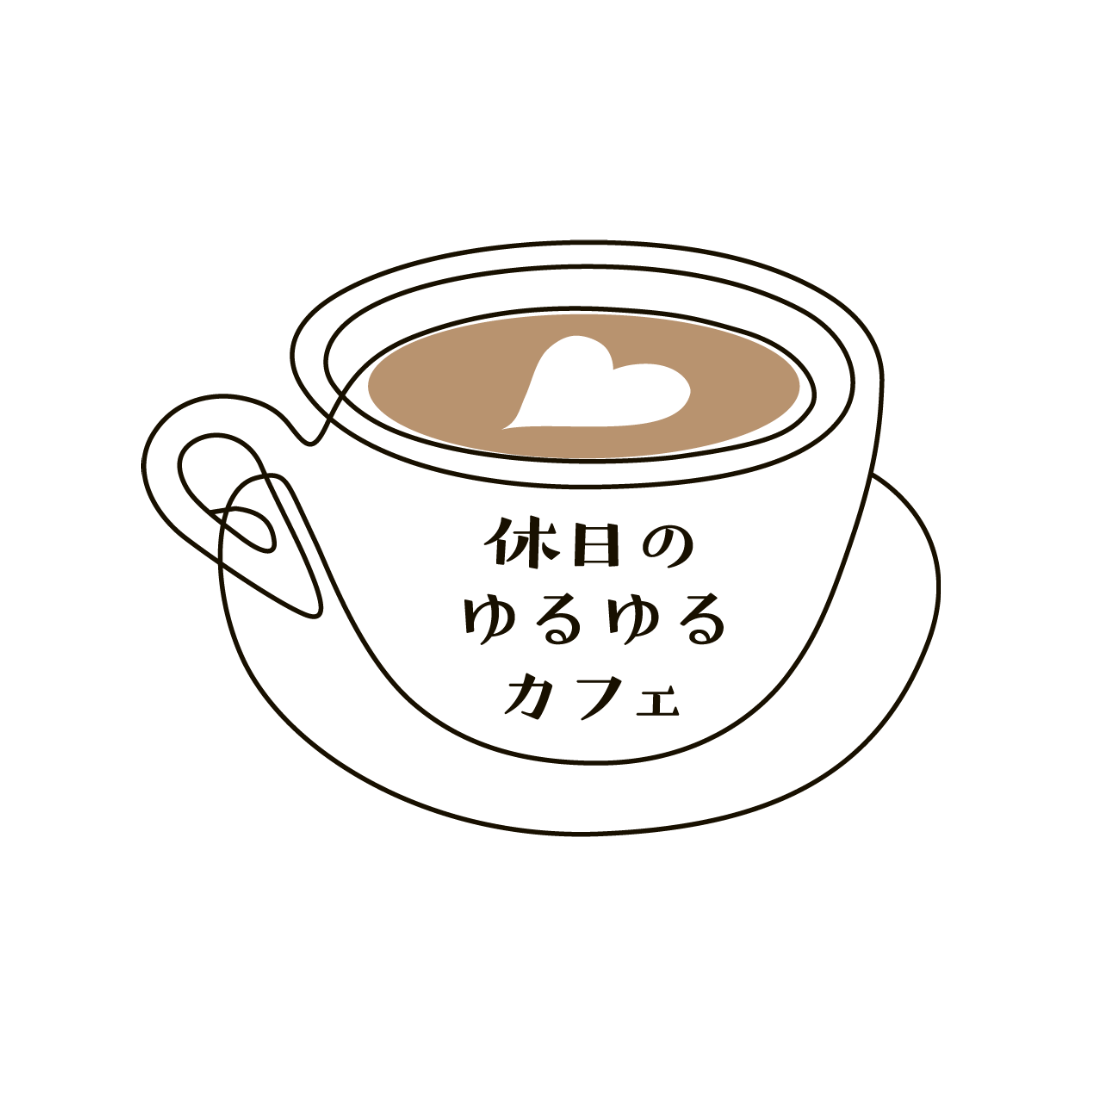 ビジネス成功のロゴデザインゆるゆるカフェ様ロゴ